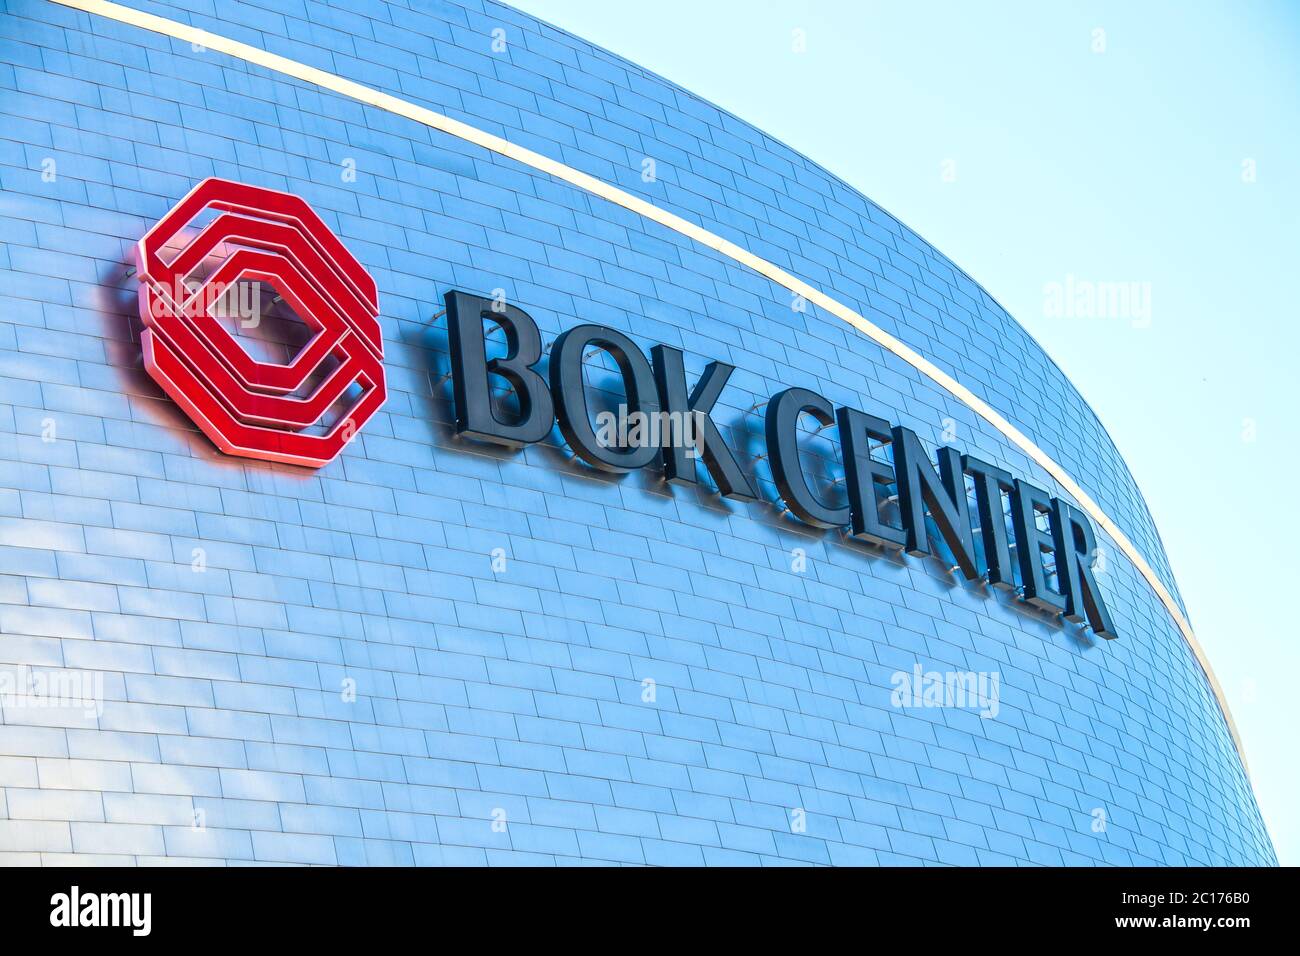 06-13-2020 Tulsa USA - BOK Center Nahaufnahme des Schildes auf gebogener Seite mit strahlendem Sonnenlicht und hellblauem Himmel - Platz für Kopie Stockfoto